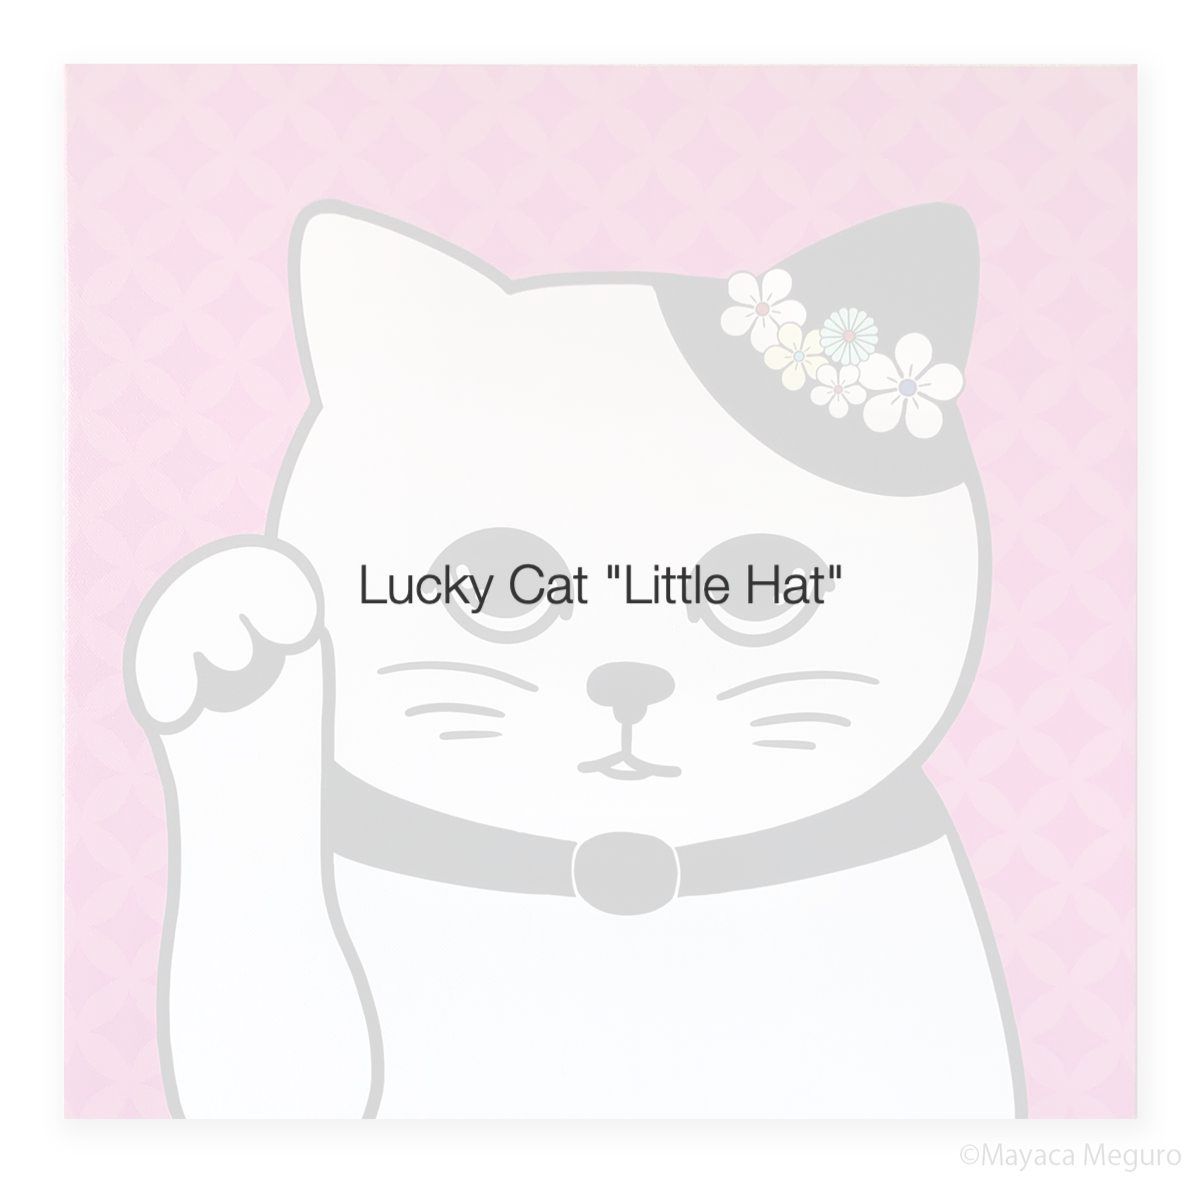 Lucky Cat Little Hat Artwork